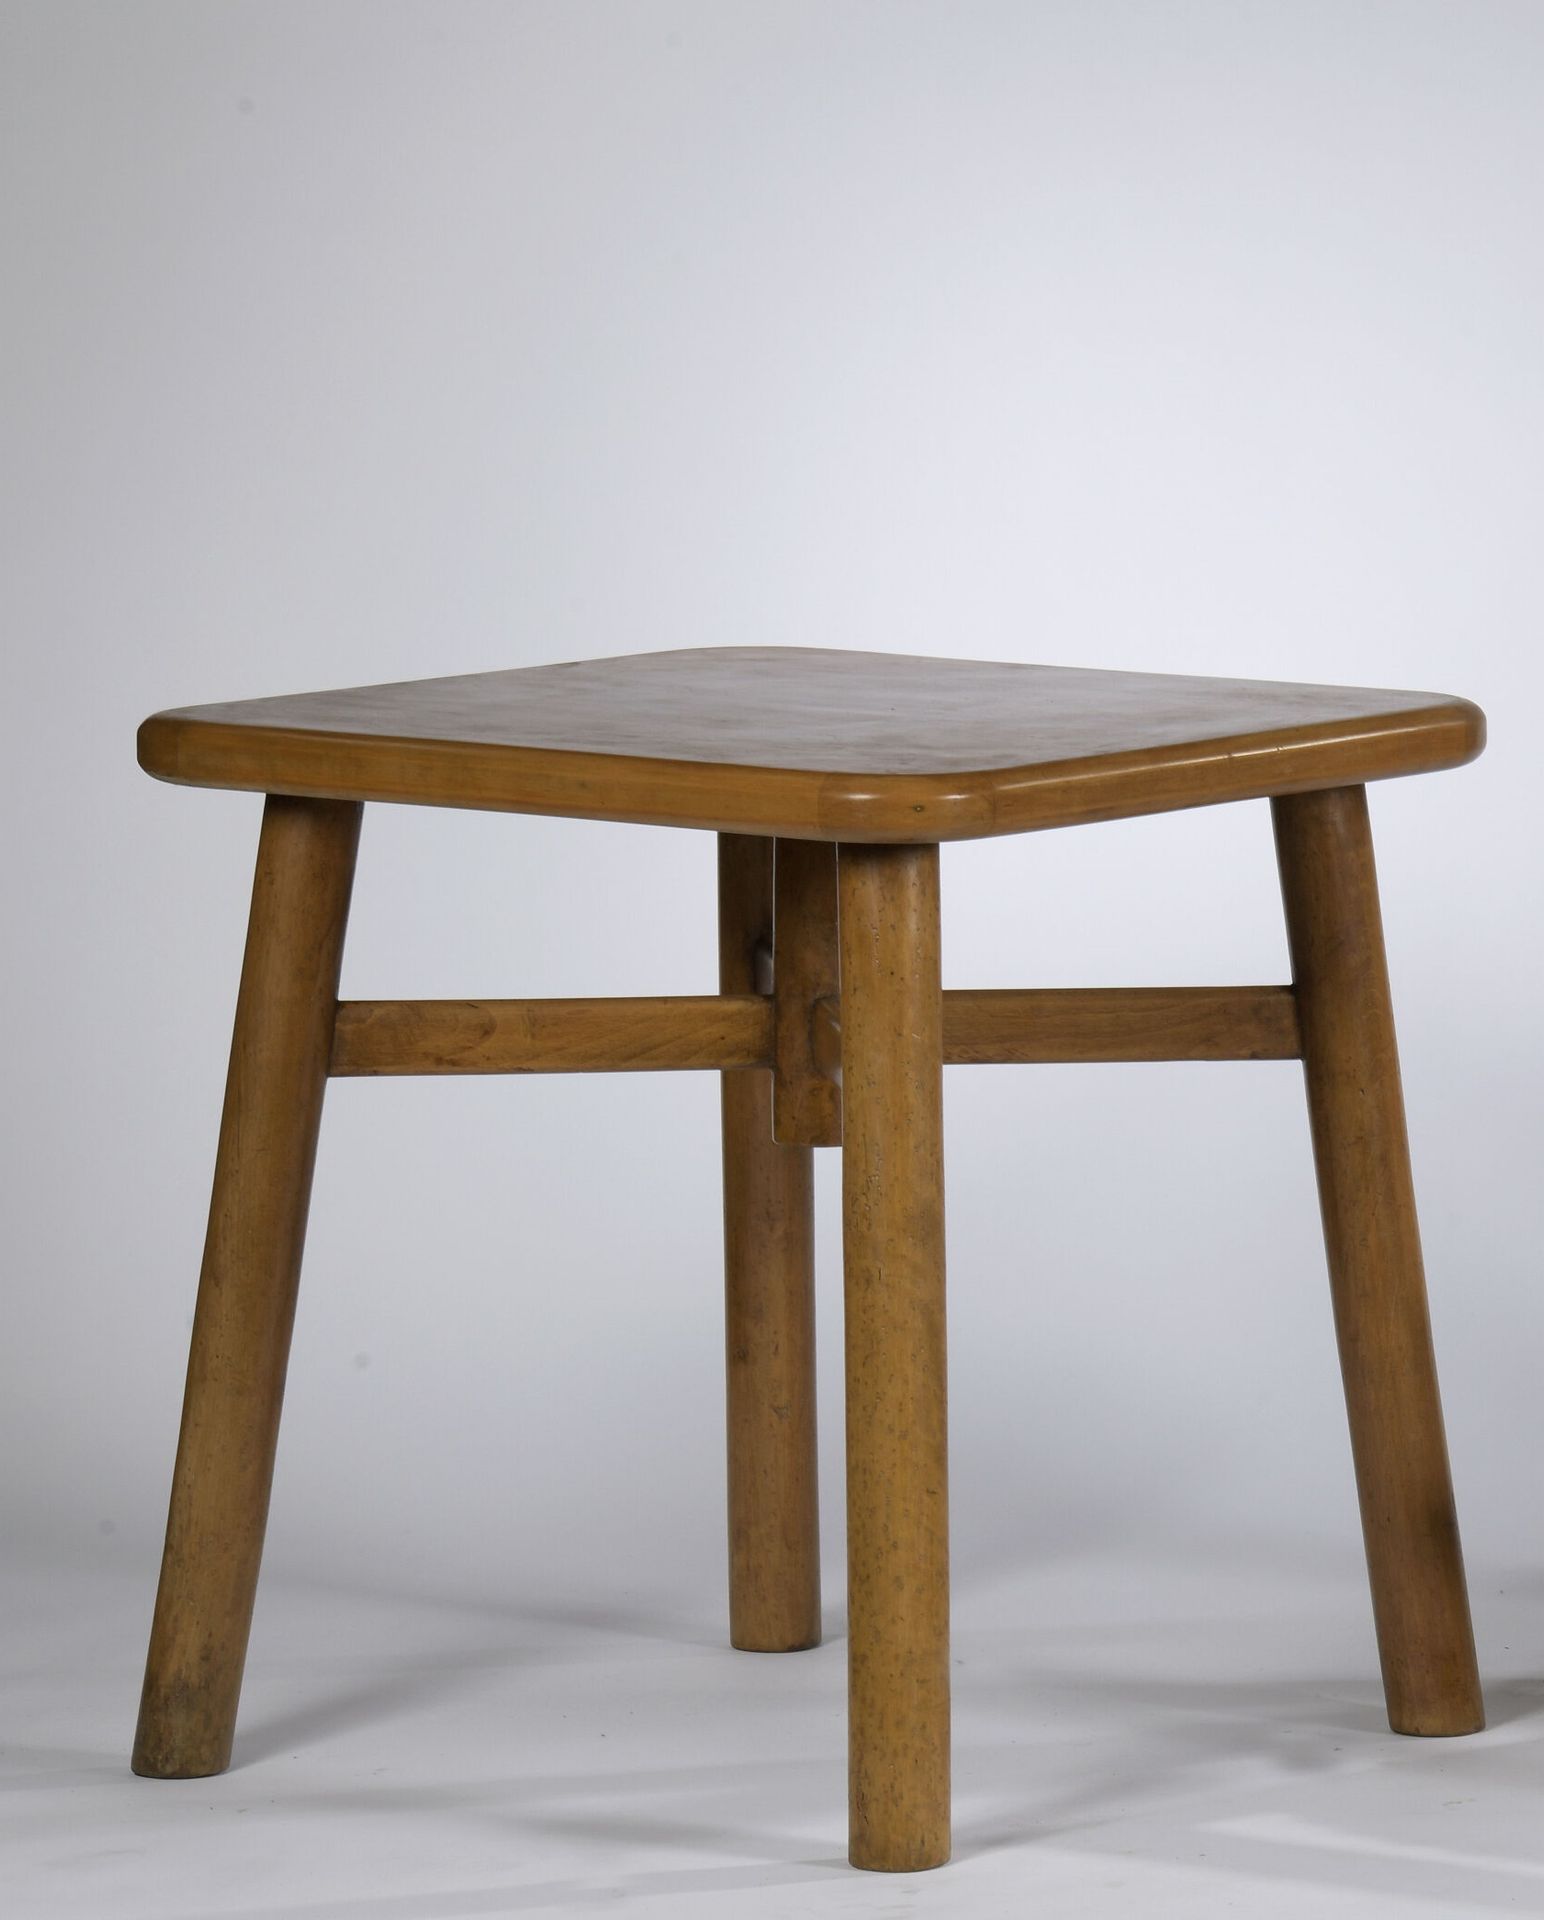 Null 在阿尔瓦-阿尔托的品味中工作。

约1940年。

优雅的边桌，圆形的实木底座支撑着一个方形的实木桌面。

顶部下方的标签。X形的横档，中间有一个优雅&hellip;